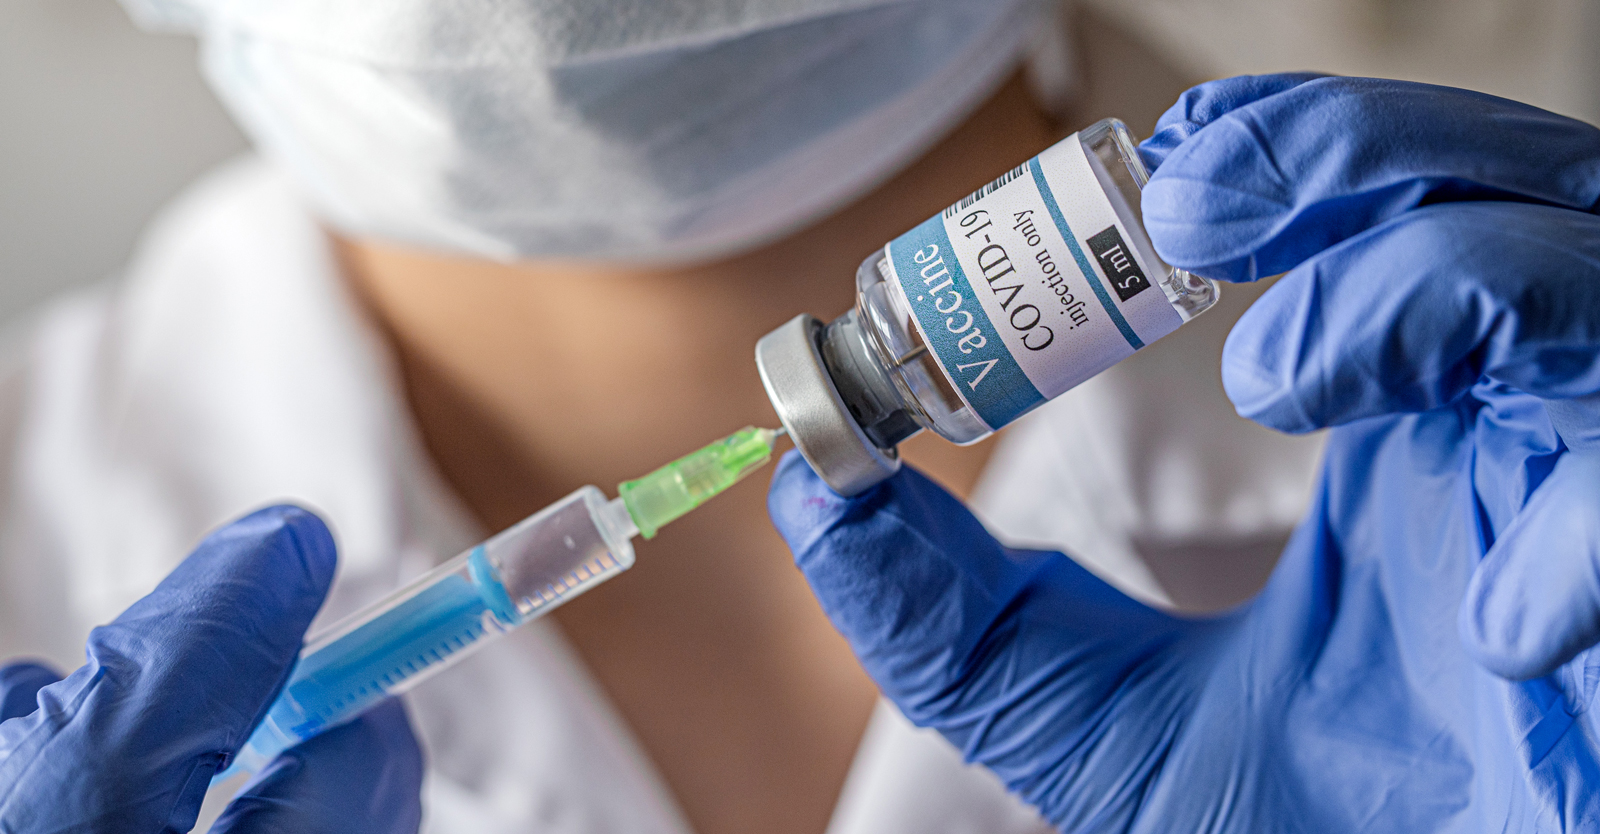 米FDAにより緊急使用許可を受けた3種類の新型コロナワクチン全てにおいて血栓ができる副反応が報告される